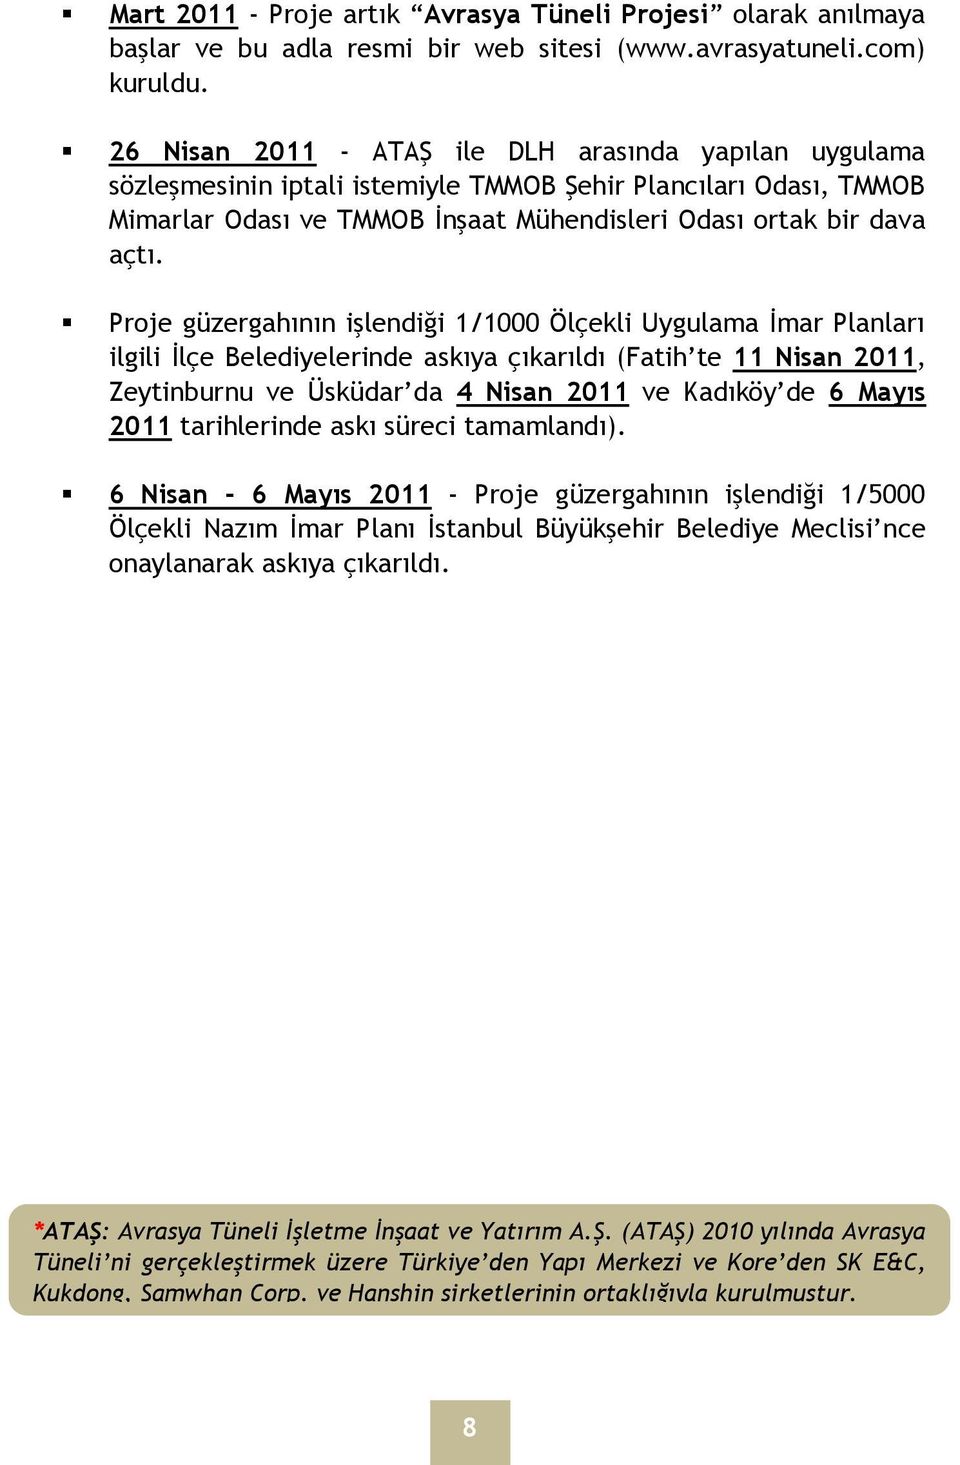 Proje güzergahının işlendiği 1/1000 Ölçekli Uygulama İmar Planları ilgili İlçe Belediyelerinde askıya çıkarıldı (Fatih te 11 Nisan 2011, Zeytinburnu ve Üsküdar da 4 Nisan 2011 ve Kadıköy de 6 Mayıs